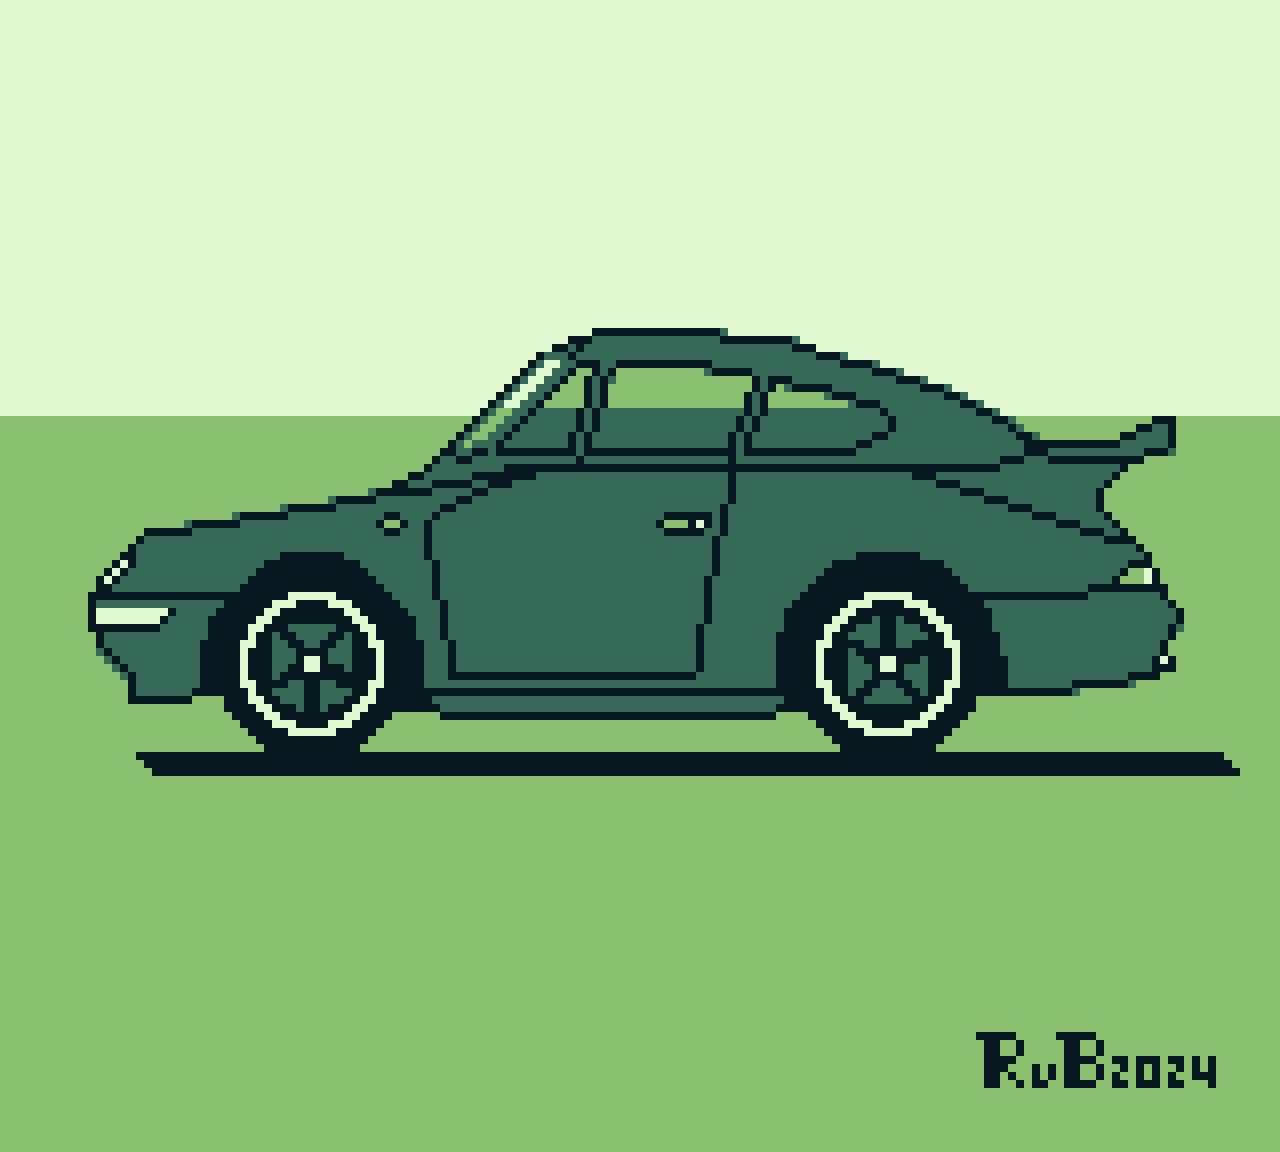 pixel art of a Porsche race car